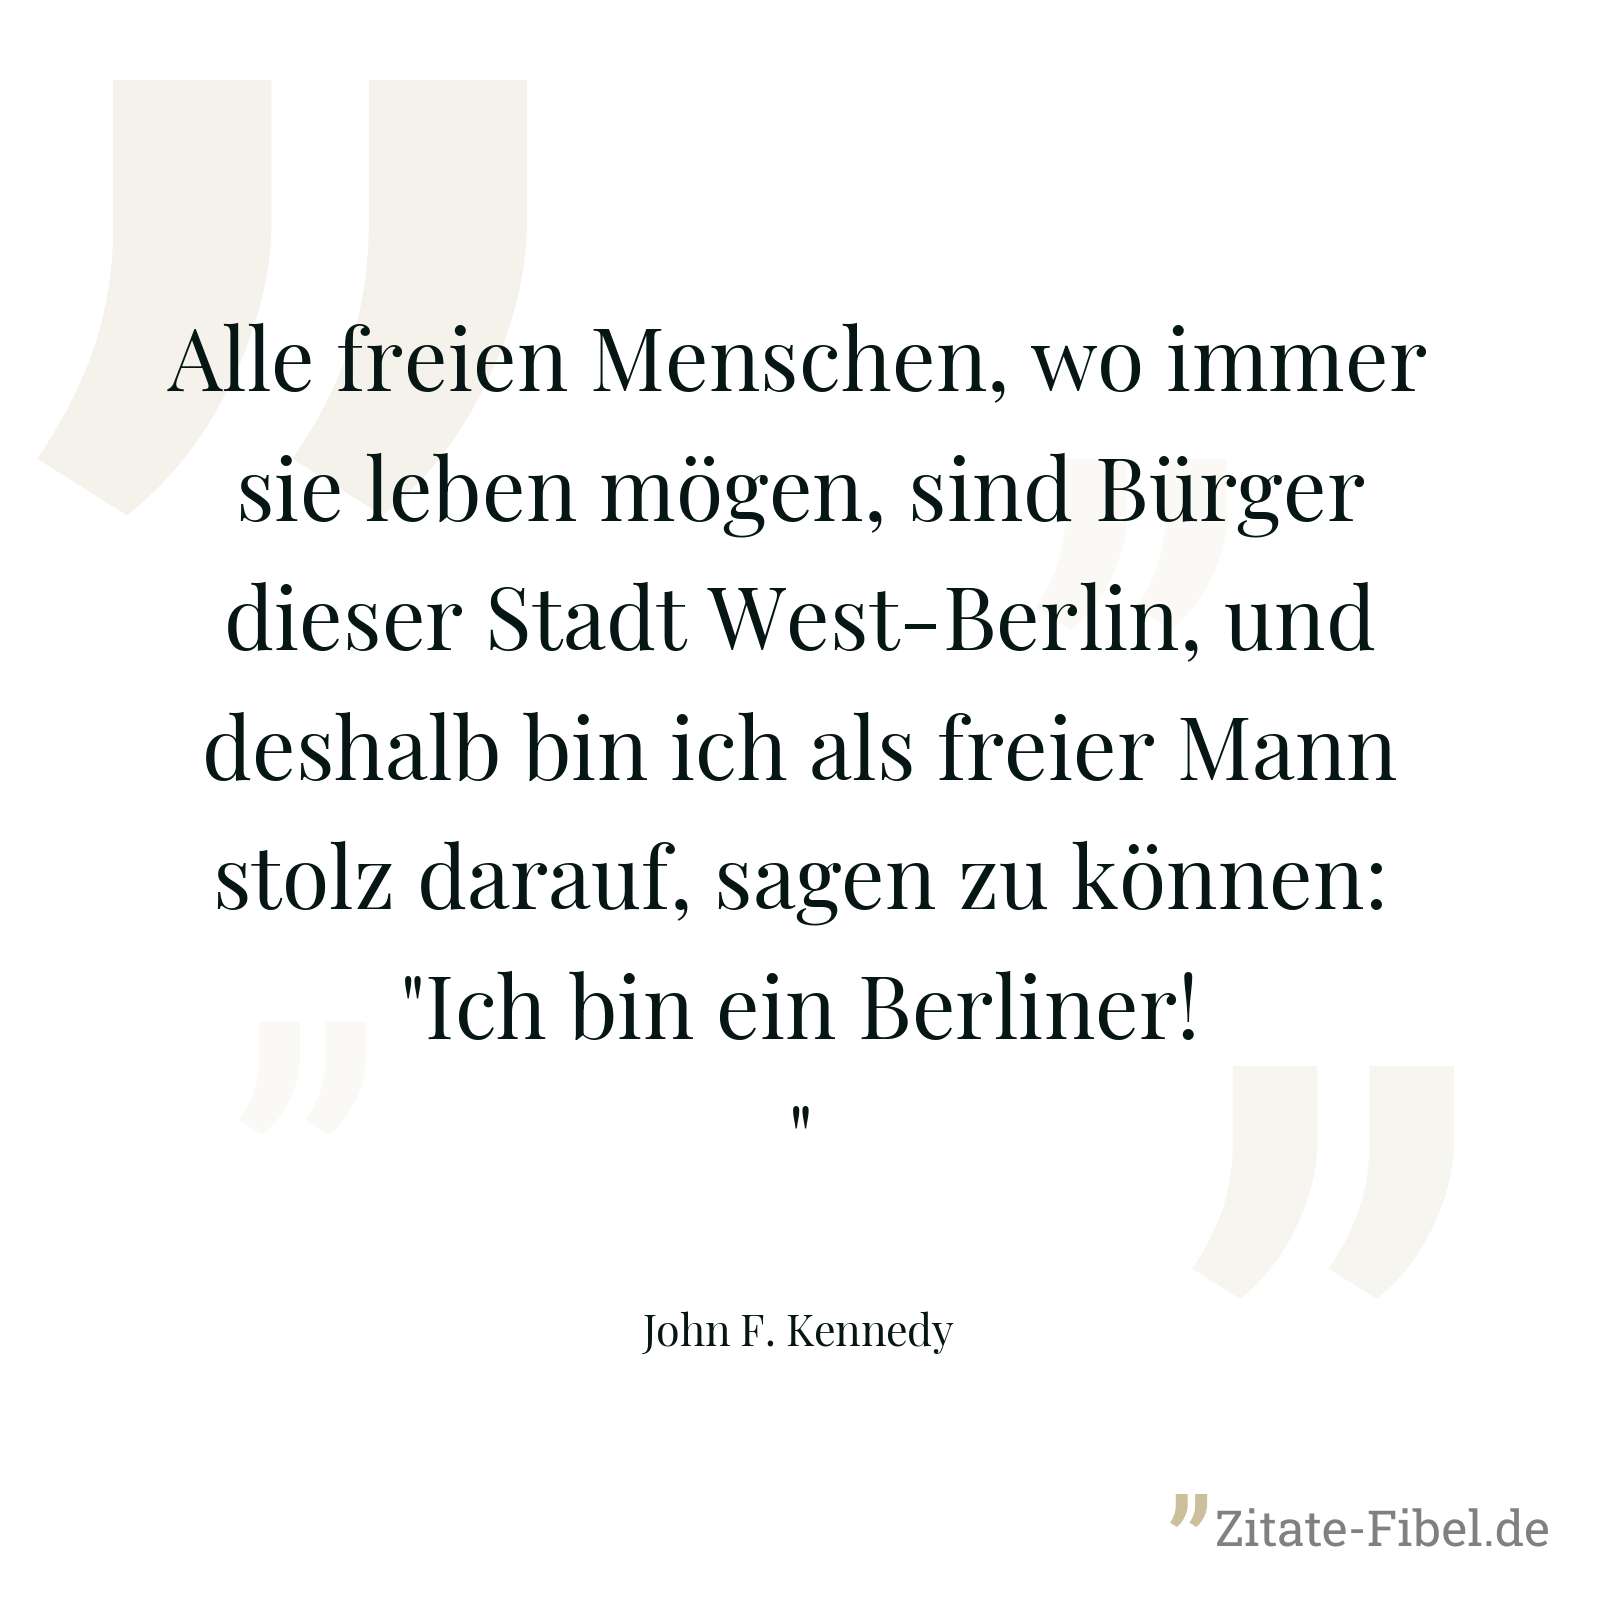 Alle freien Menschen, wo immer sie leben mögen, sind Bürger dieser Stadt West-Berlin, und deshalb bin ich als freier Mann stolz darauf, sagen zu können: "Ich bin ein Berliner!" - John F. Kennedy